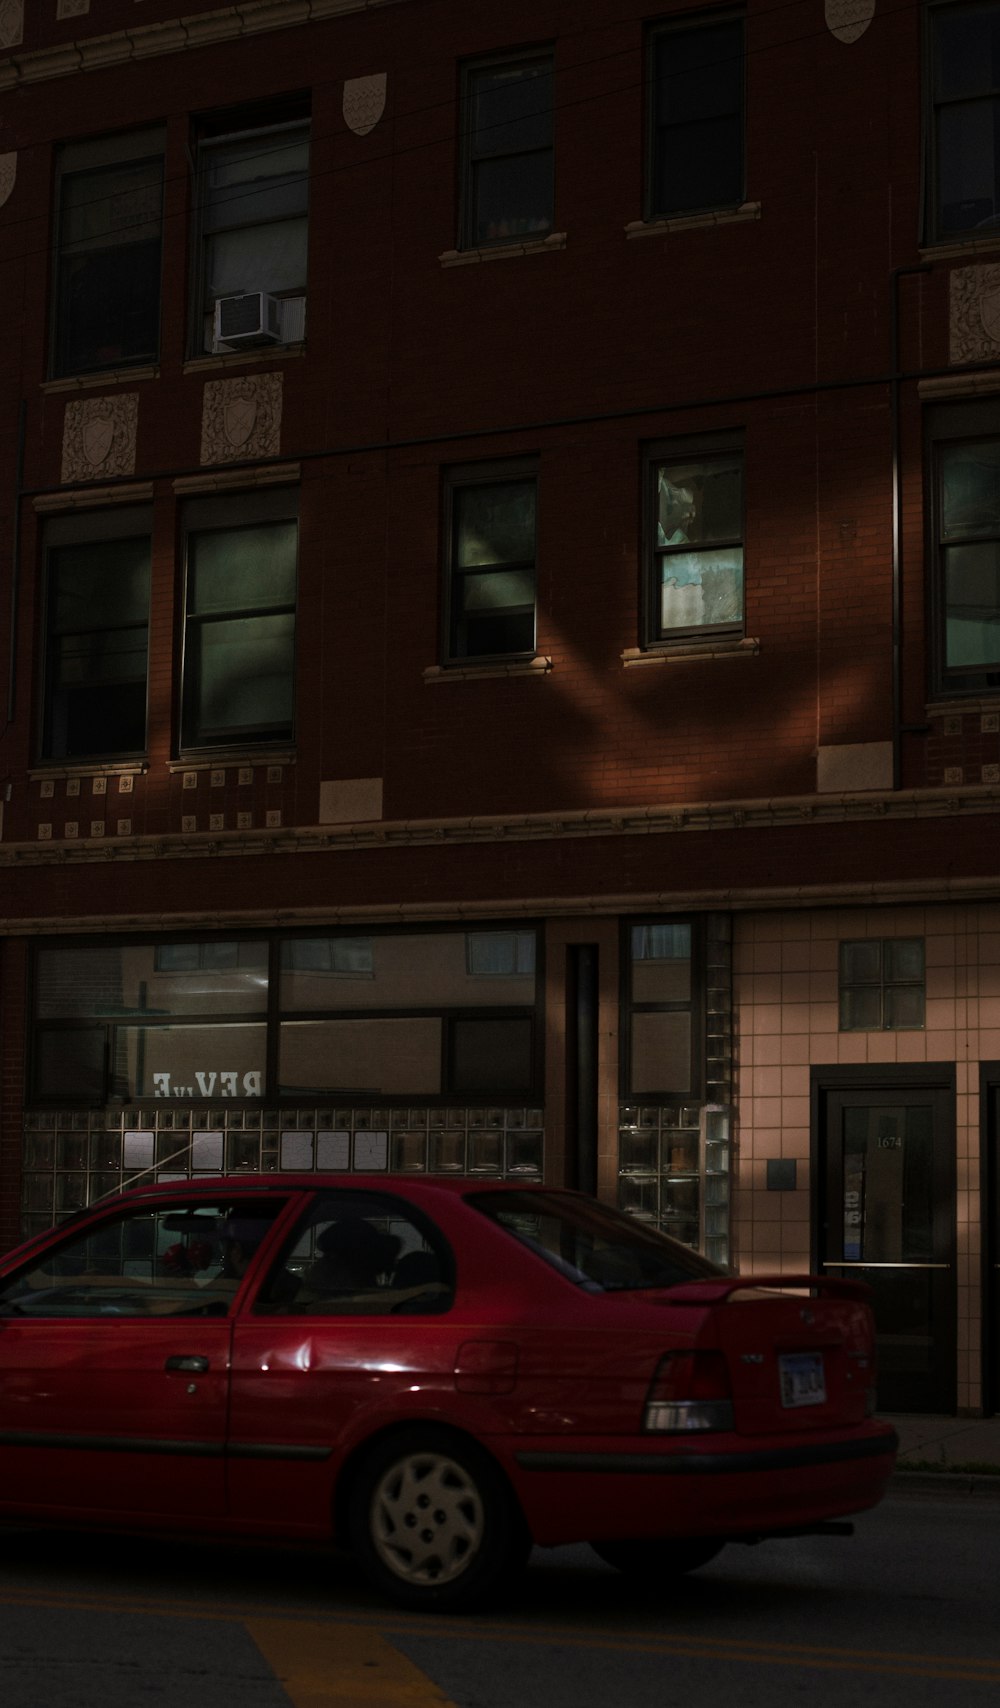 Un'auto rossa parcheggiata davanti a un edificio